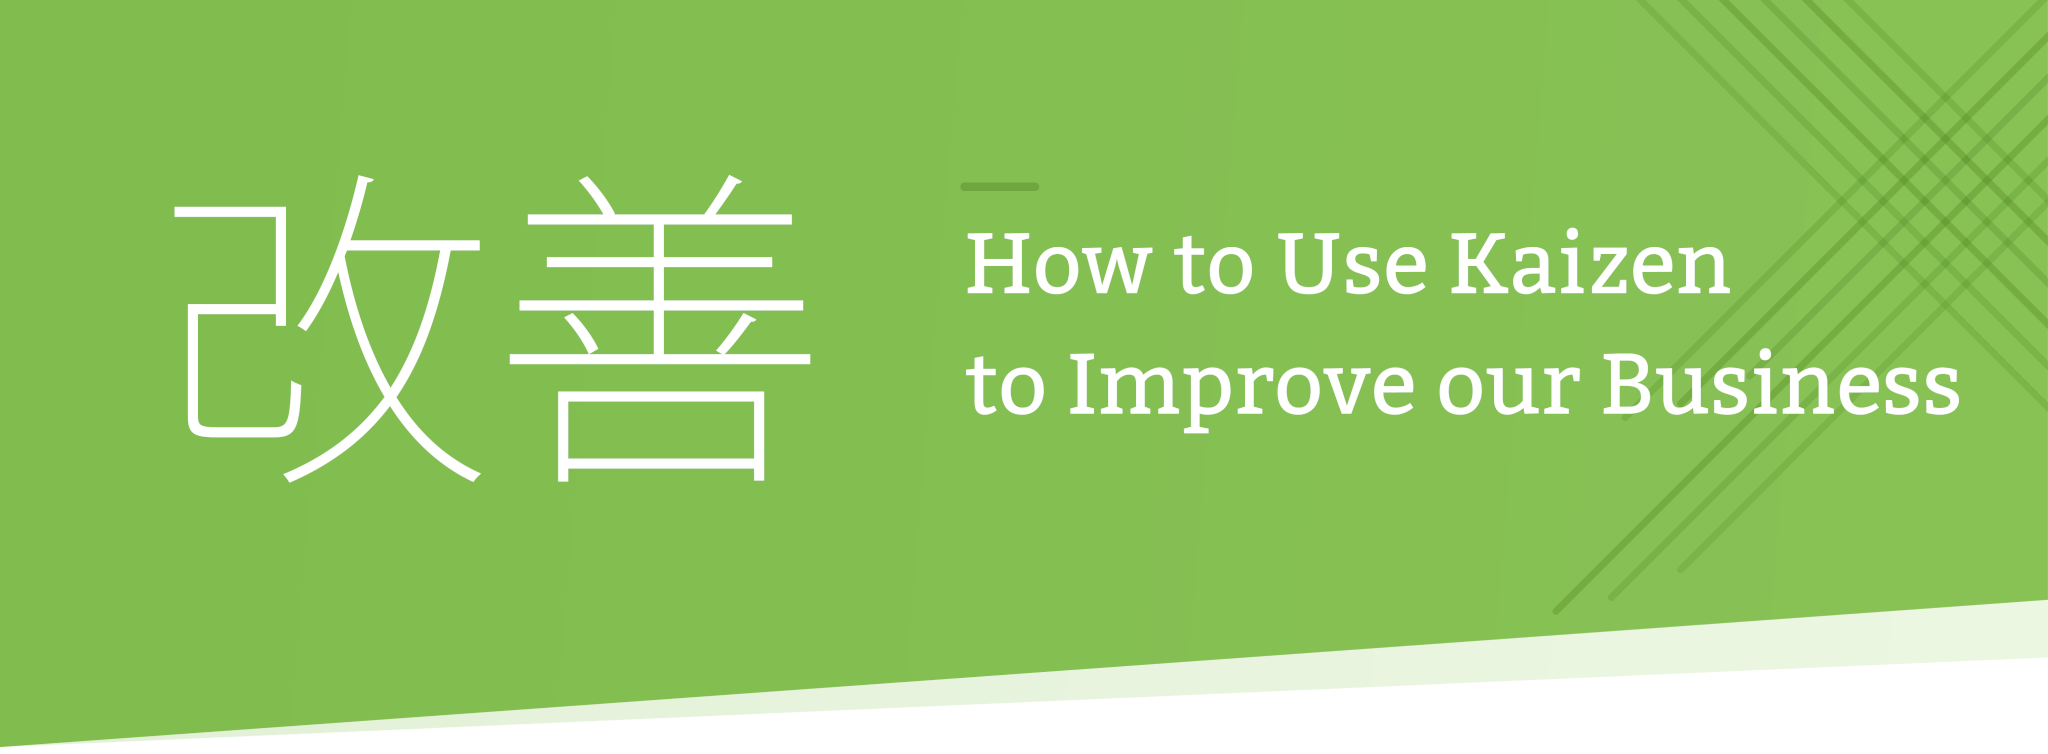 Kaizen process improvement header